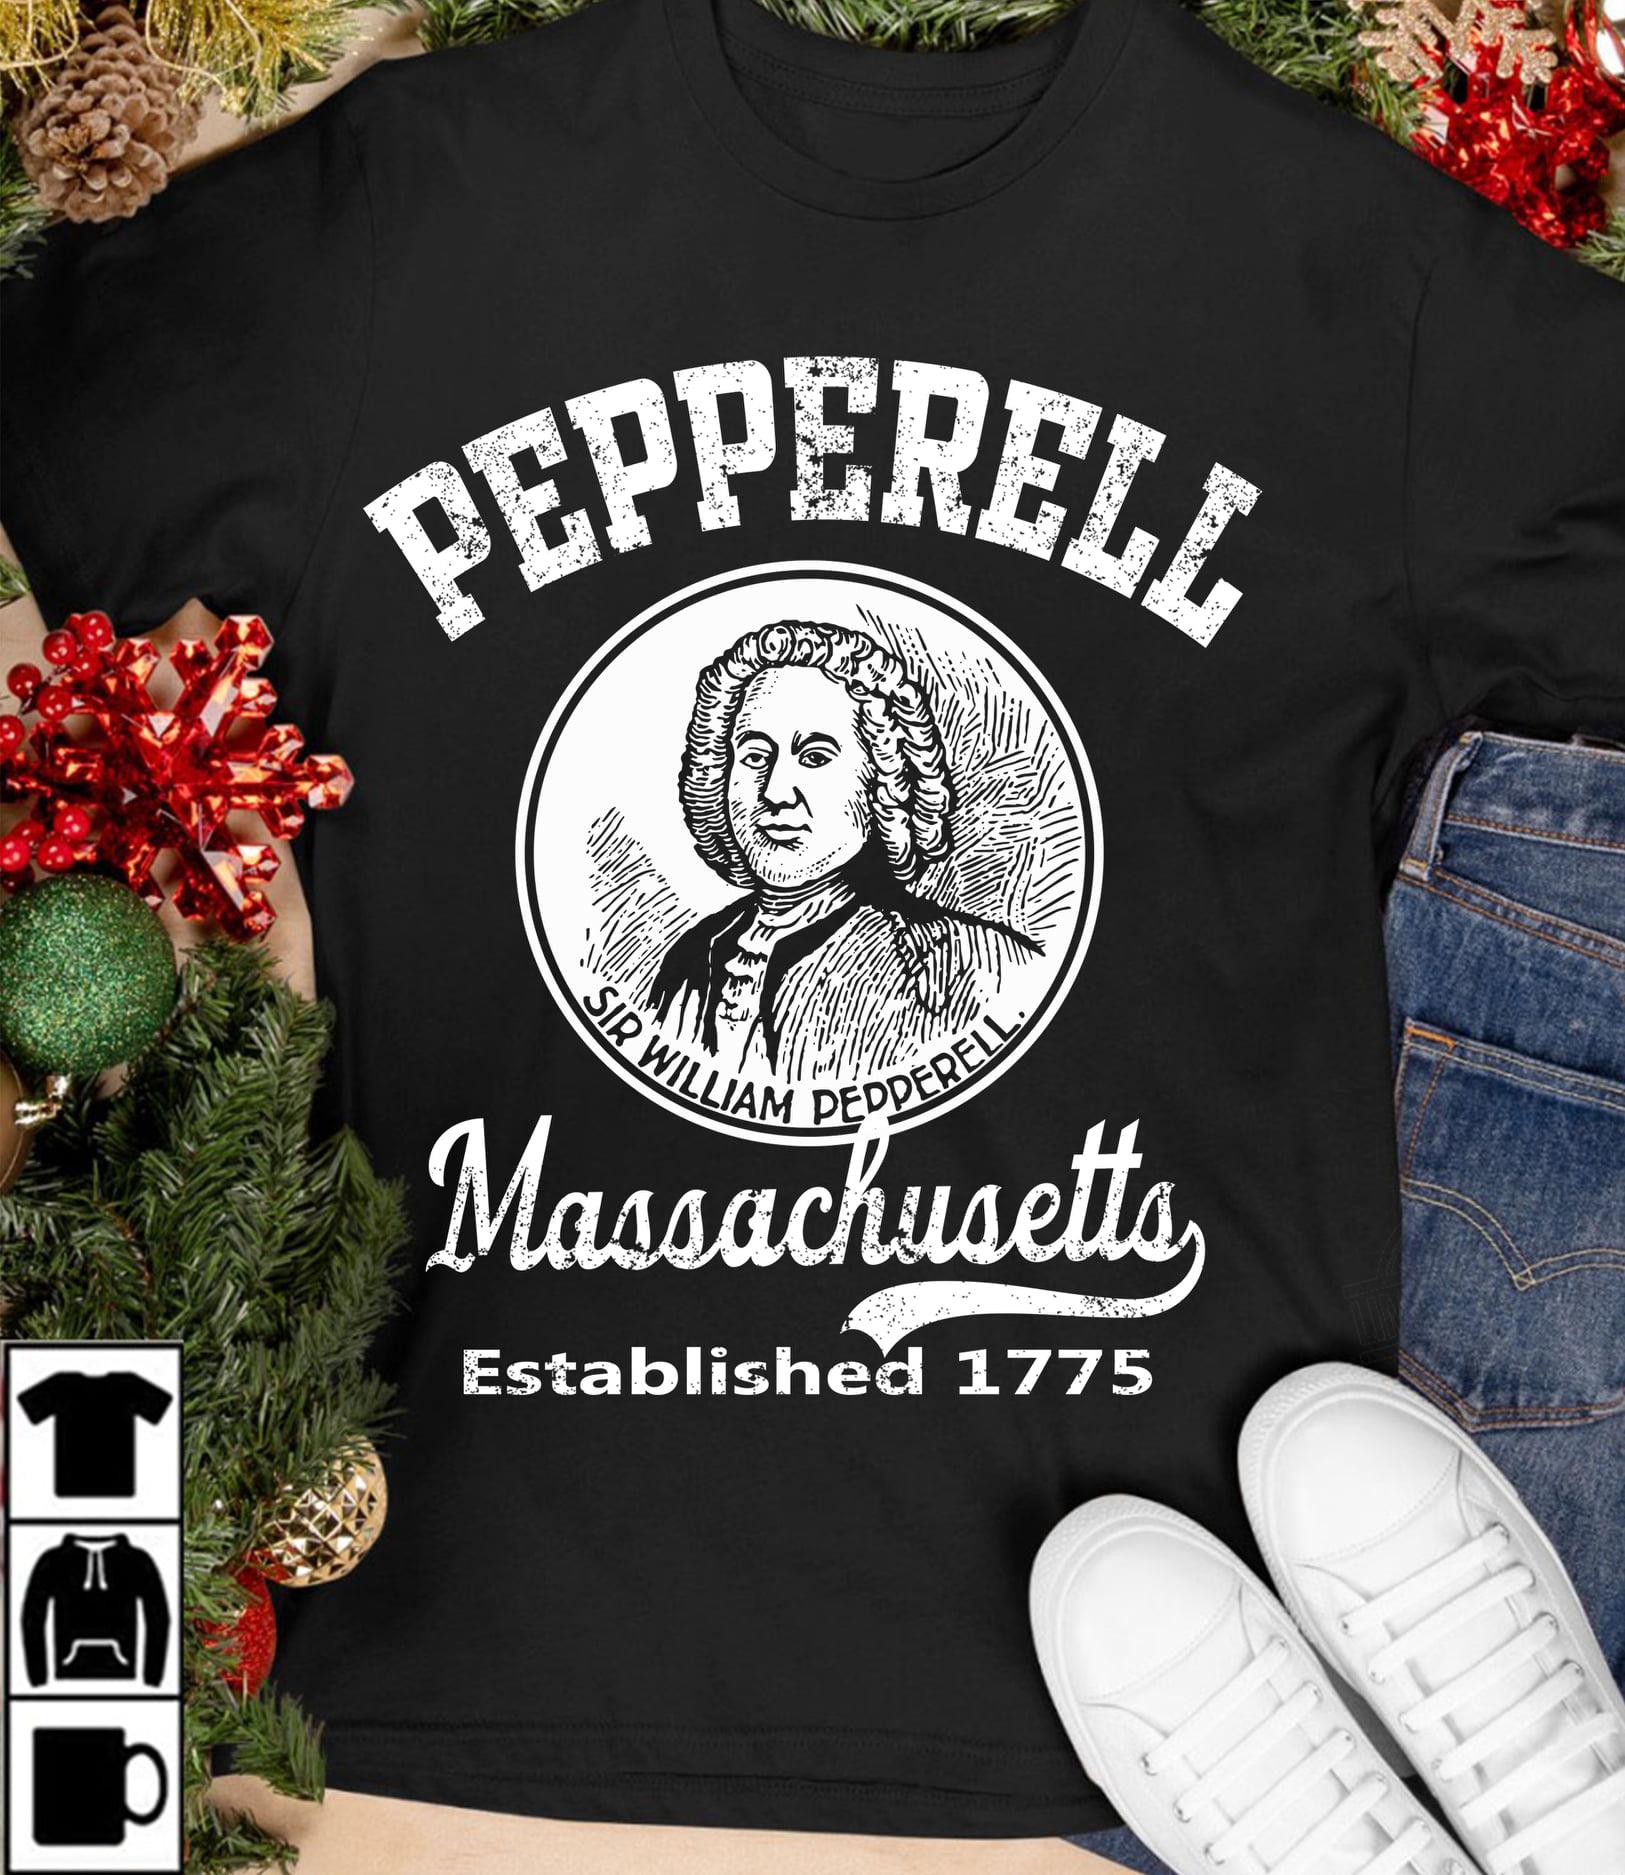 Pepperell Massachusetts Established 1775 Shirt